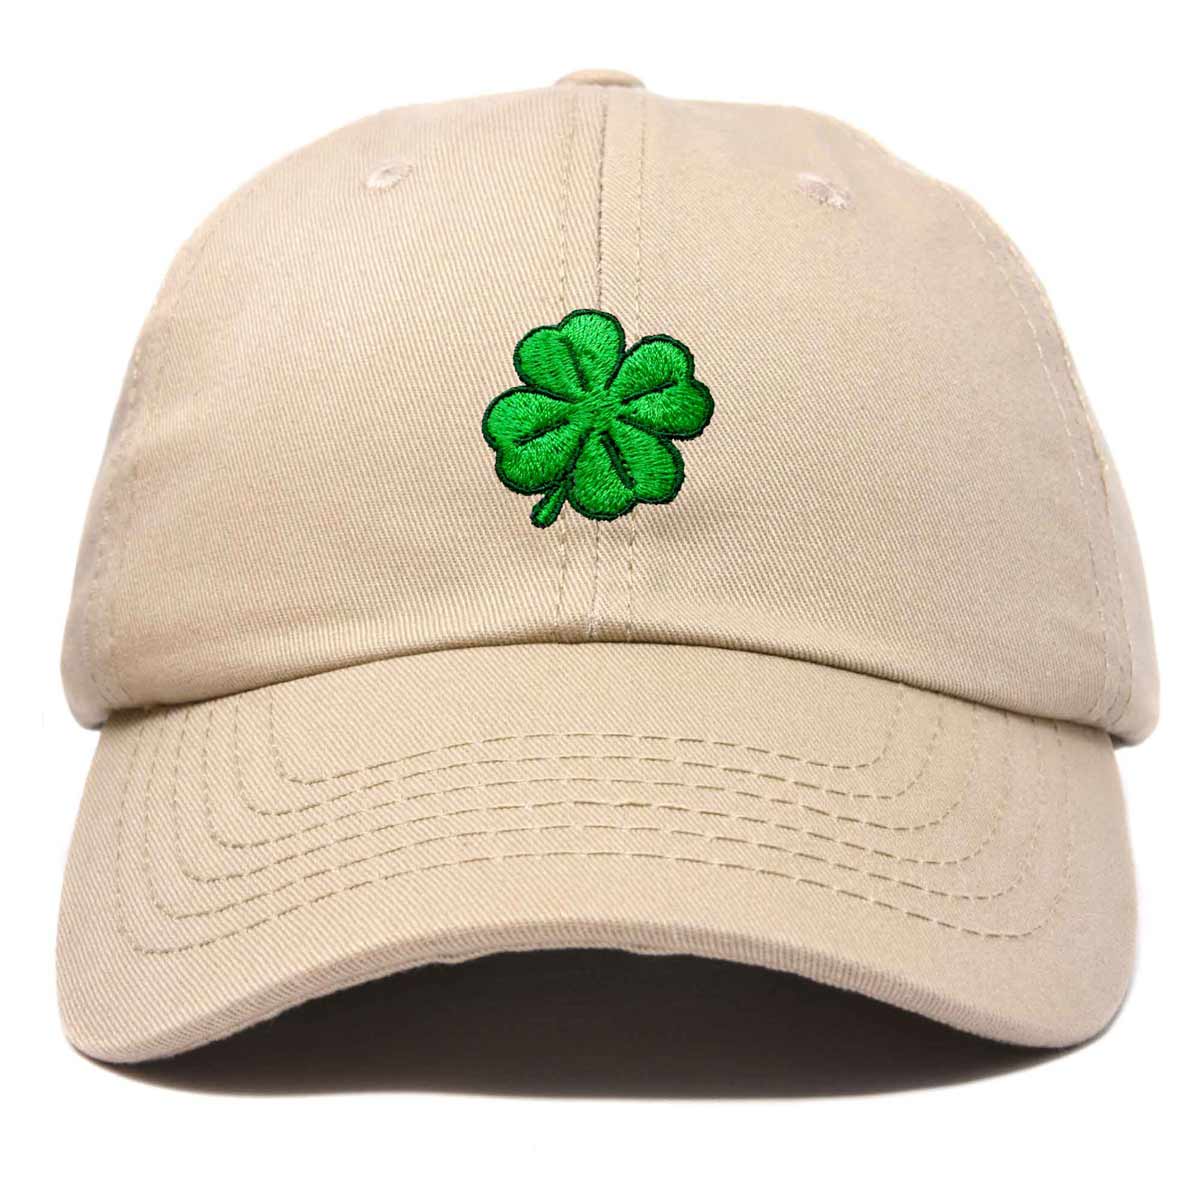 DALIX Four Leaf Clover Hat Baseball Cap St. Patrick's Day Cotton Caps